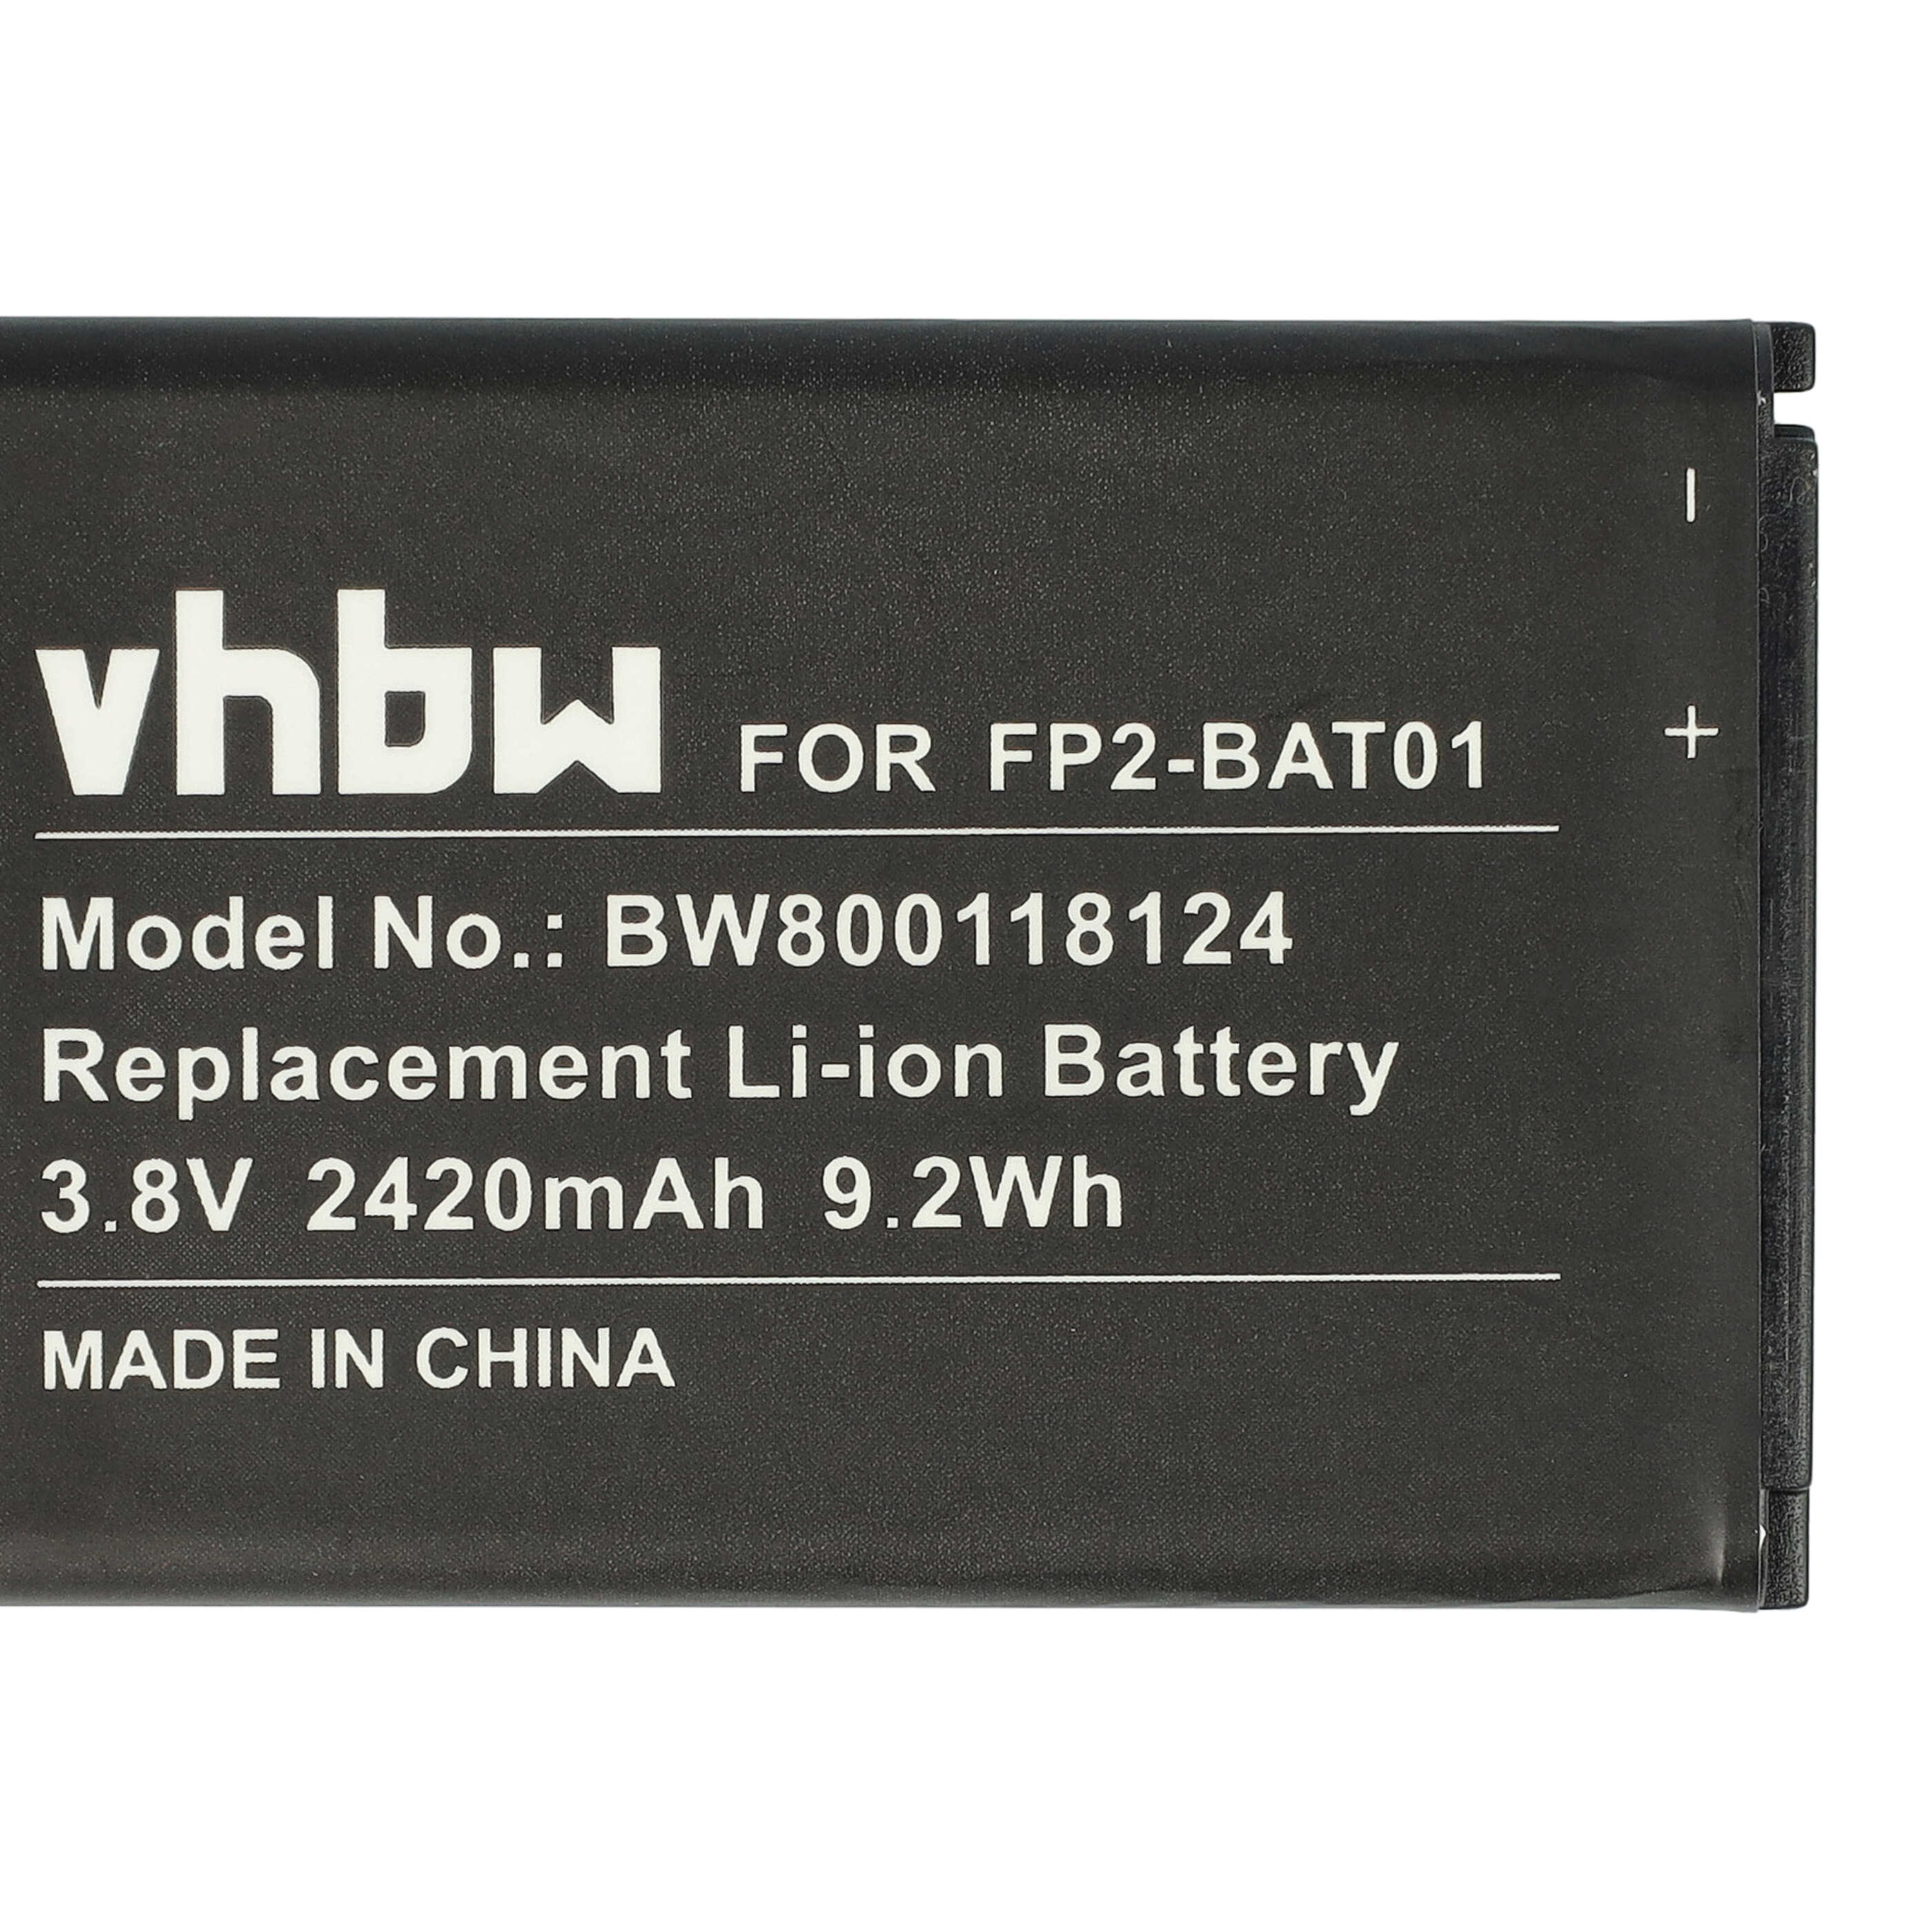 Batterie remplace Fairphone FP2-BAT01 pour téléphone portable - 2420mAh, 3,8V, Li-ion